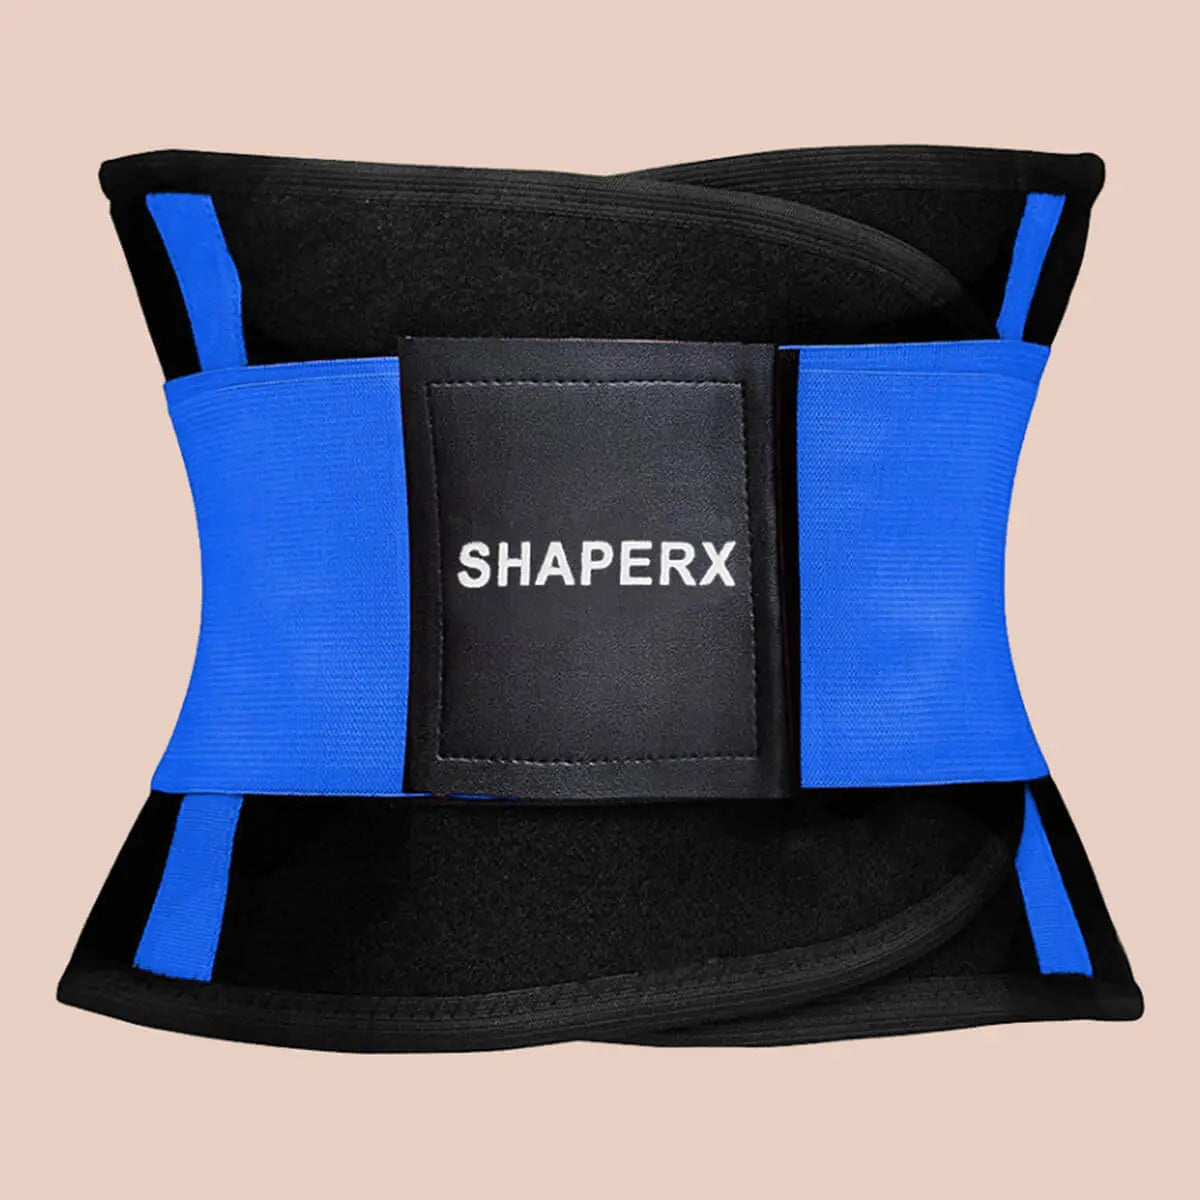 SHAPERX Women Waist Trainer Belt Waist Trimmer Belly Band Body Shaper  Sports Girdles Workout Belt, SZ8002-Rose-XL - Yahoo Shopping